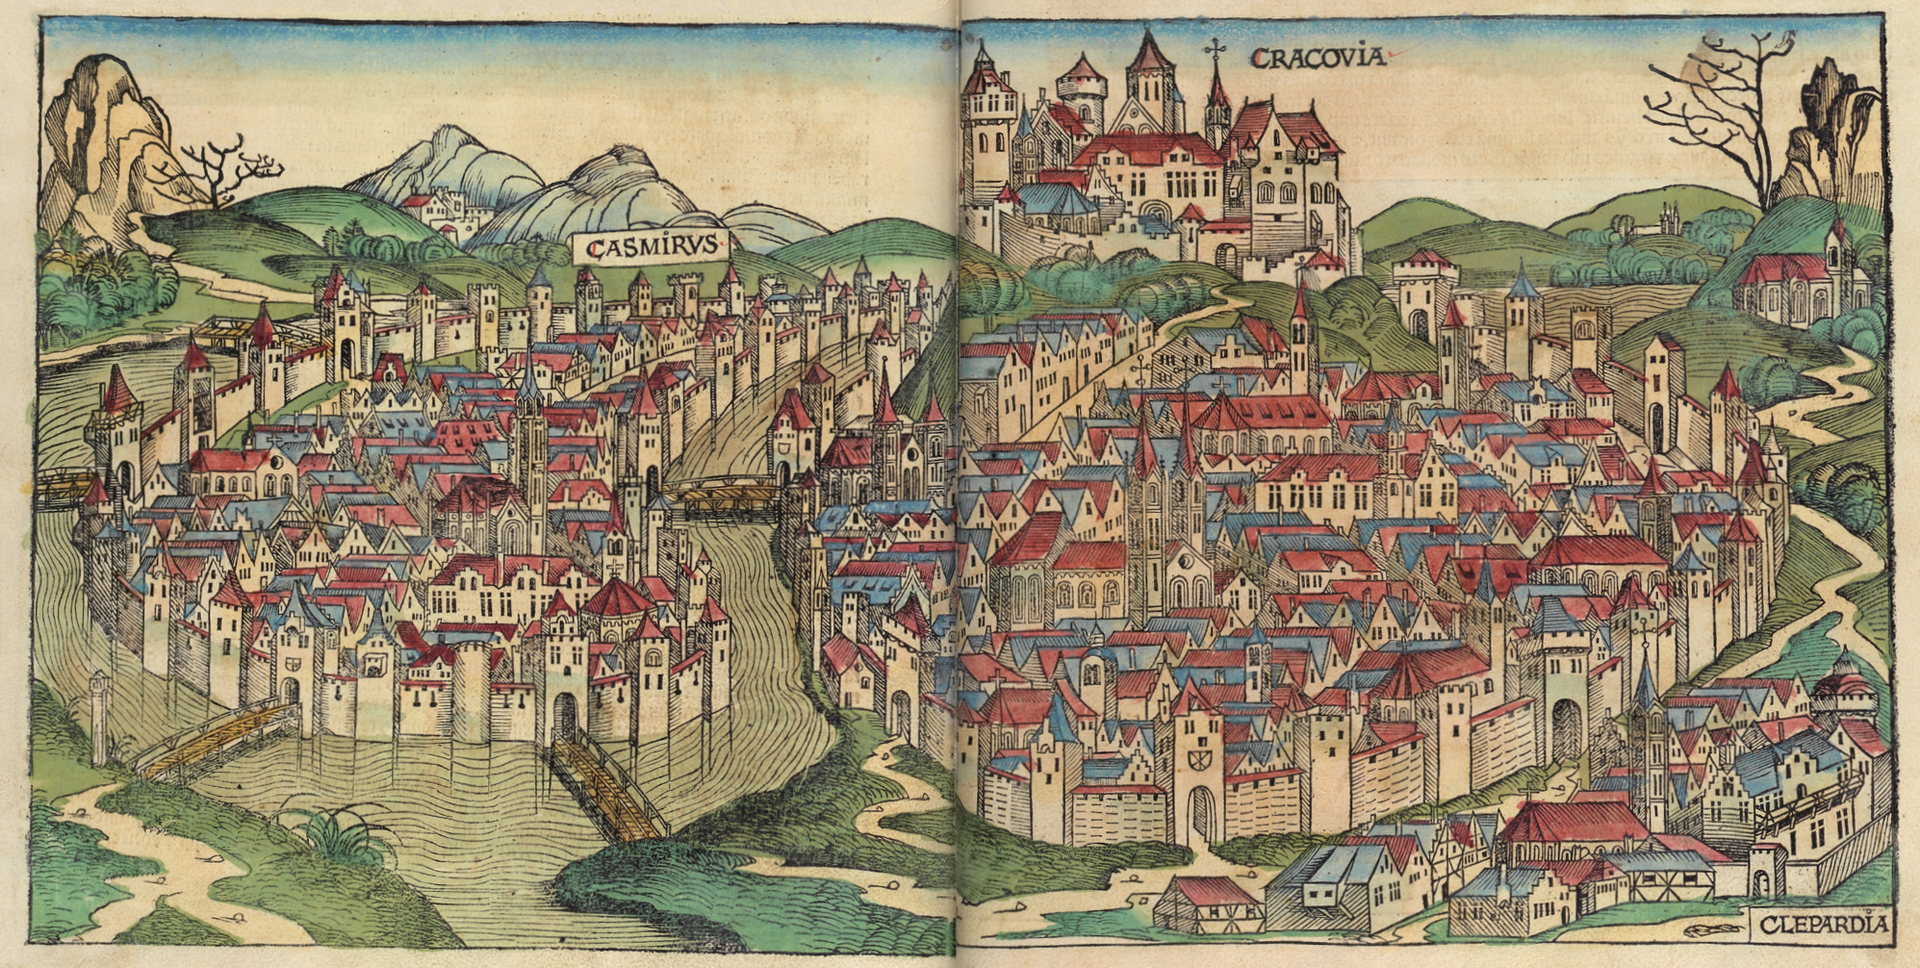 Ilustracja przedstawia rysunek Krakowa. Miasto składa się z drobnych kamieniczek ze stromymi dachami. Otoczone są one wysokim murem. Z tyłu, za kamieniczkami znajduje się wysoki zamek. Na horyzoncie widać góry.